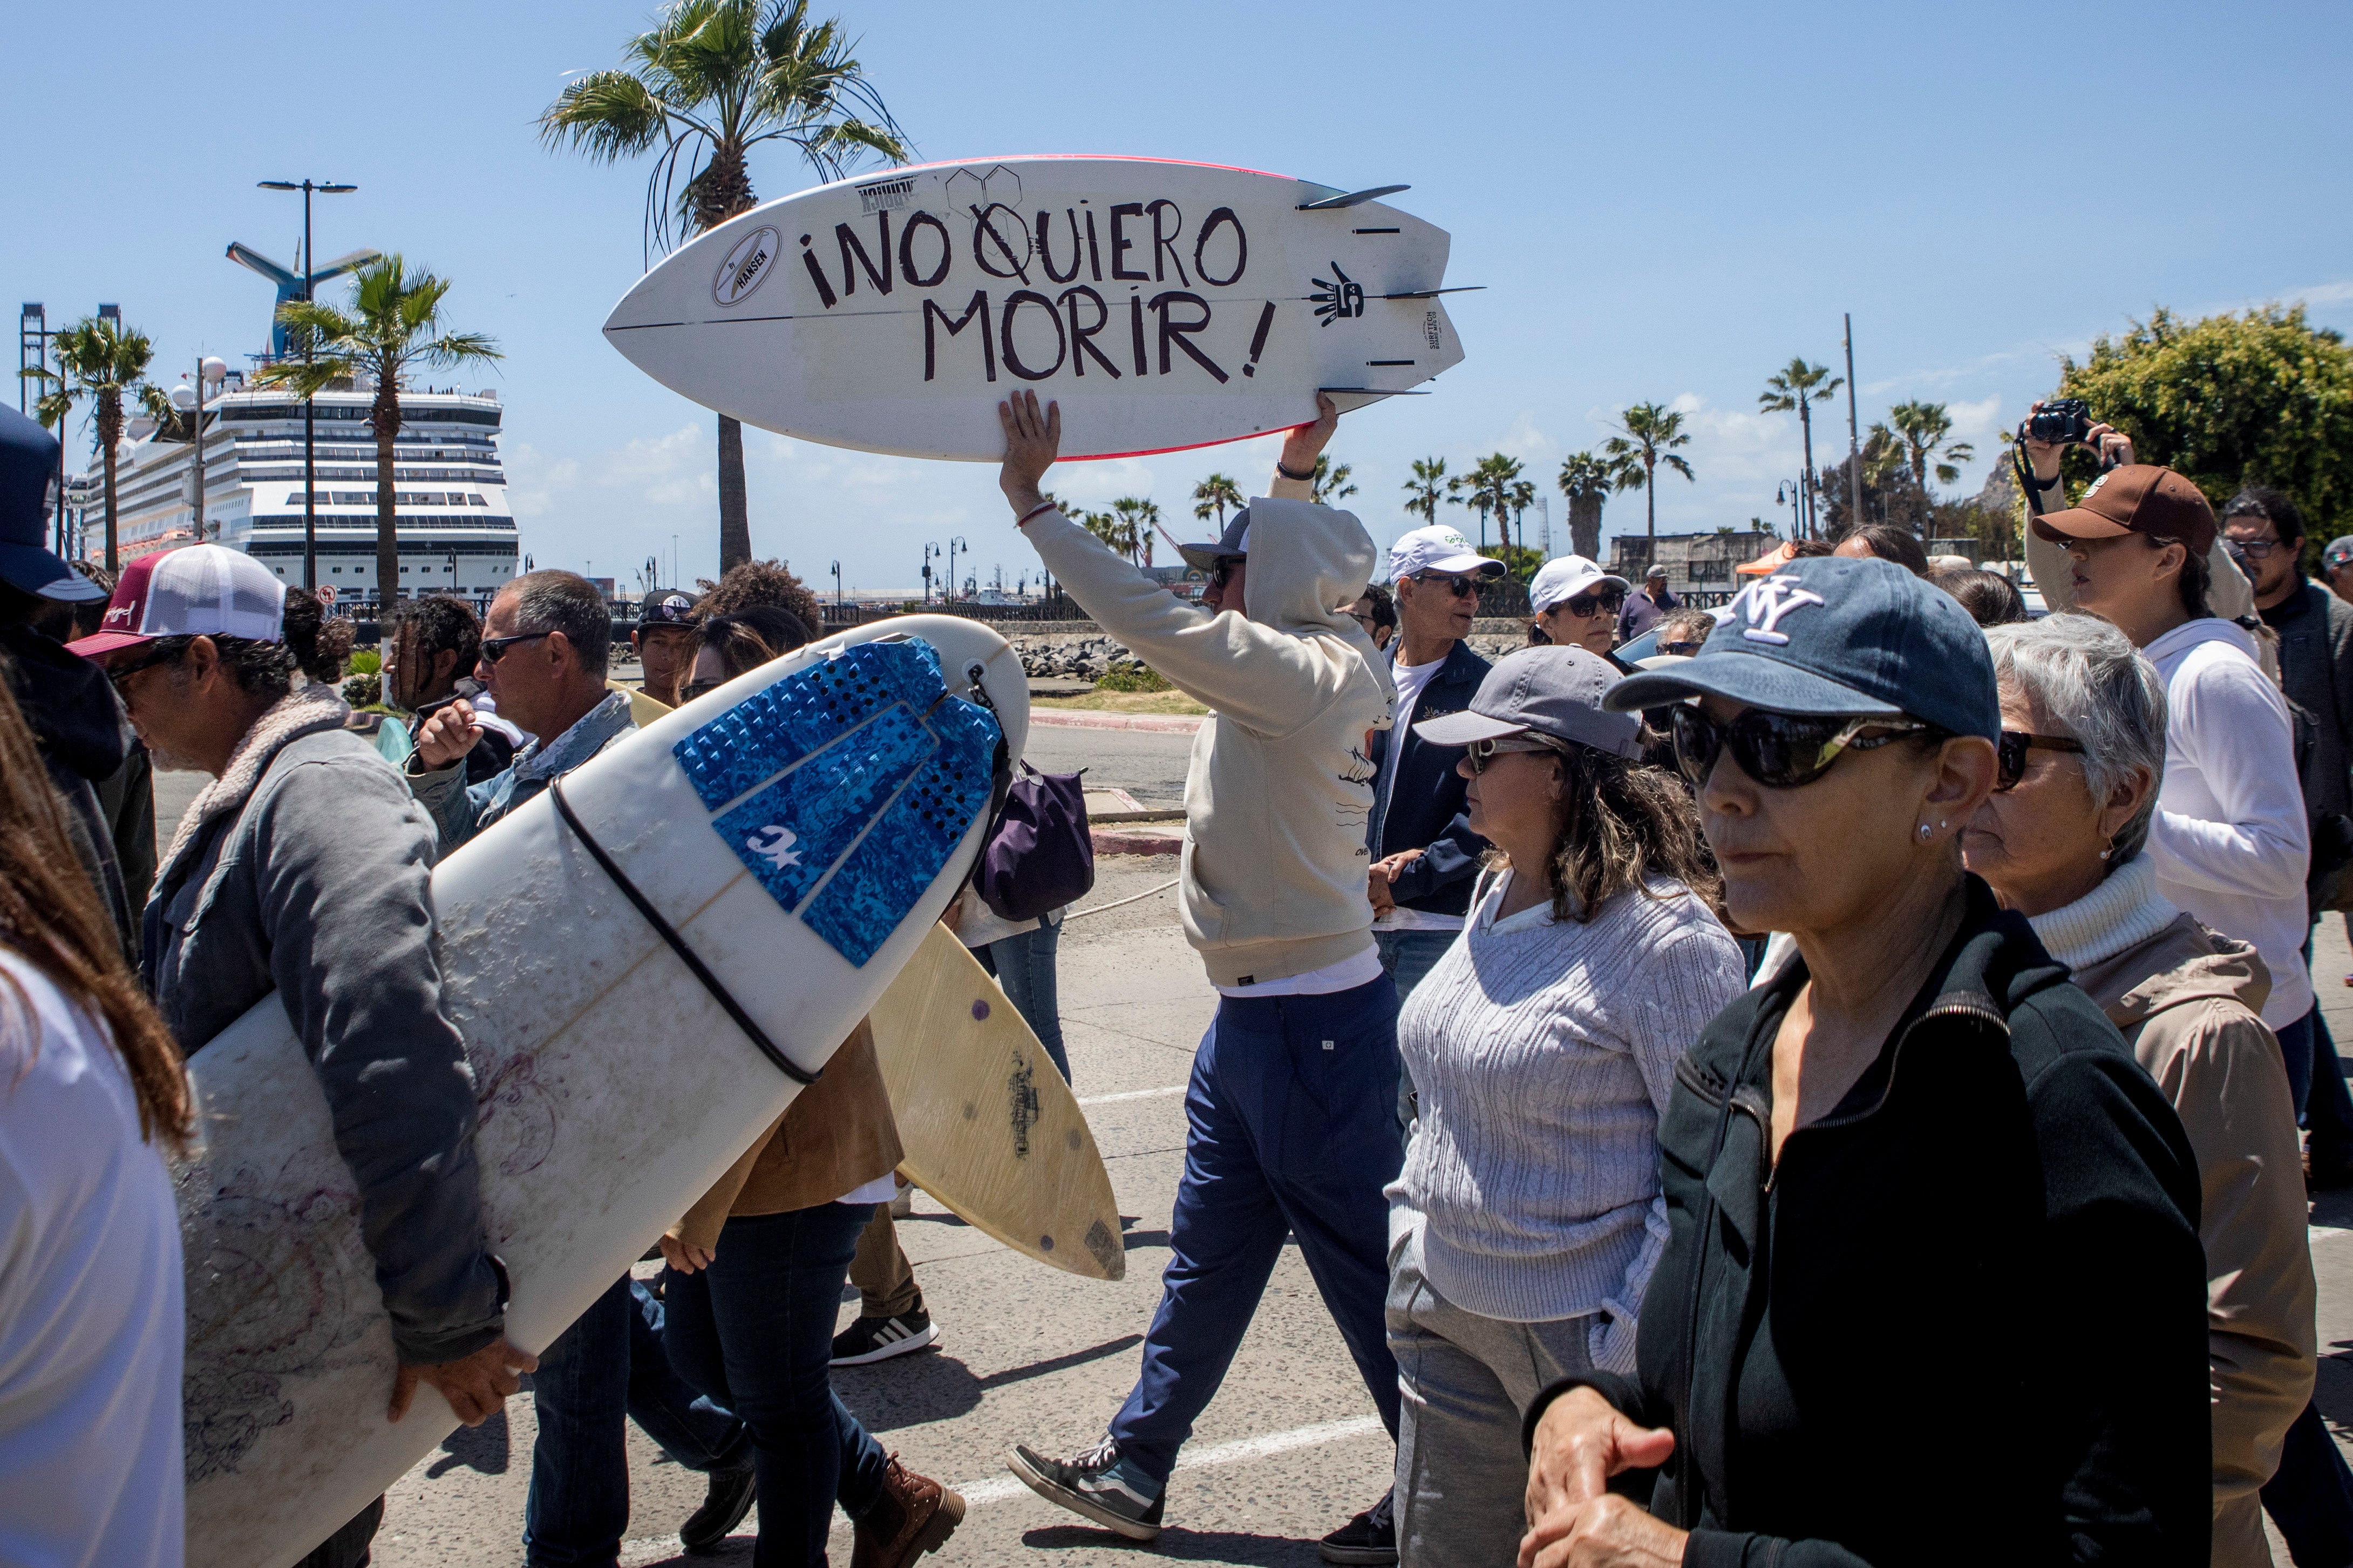 Un manifestante sostiene una tabla de bodyboard con la leyenda “¡No quiero morir!” mientras protesta por los asesinatos de surfistas extranjeros en Ensenada, México